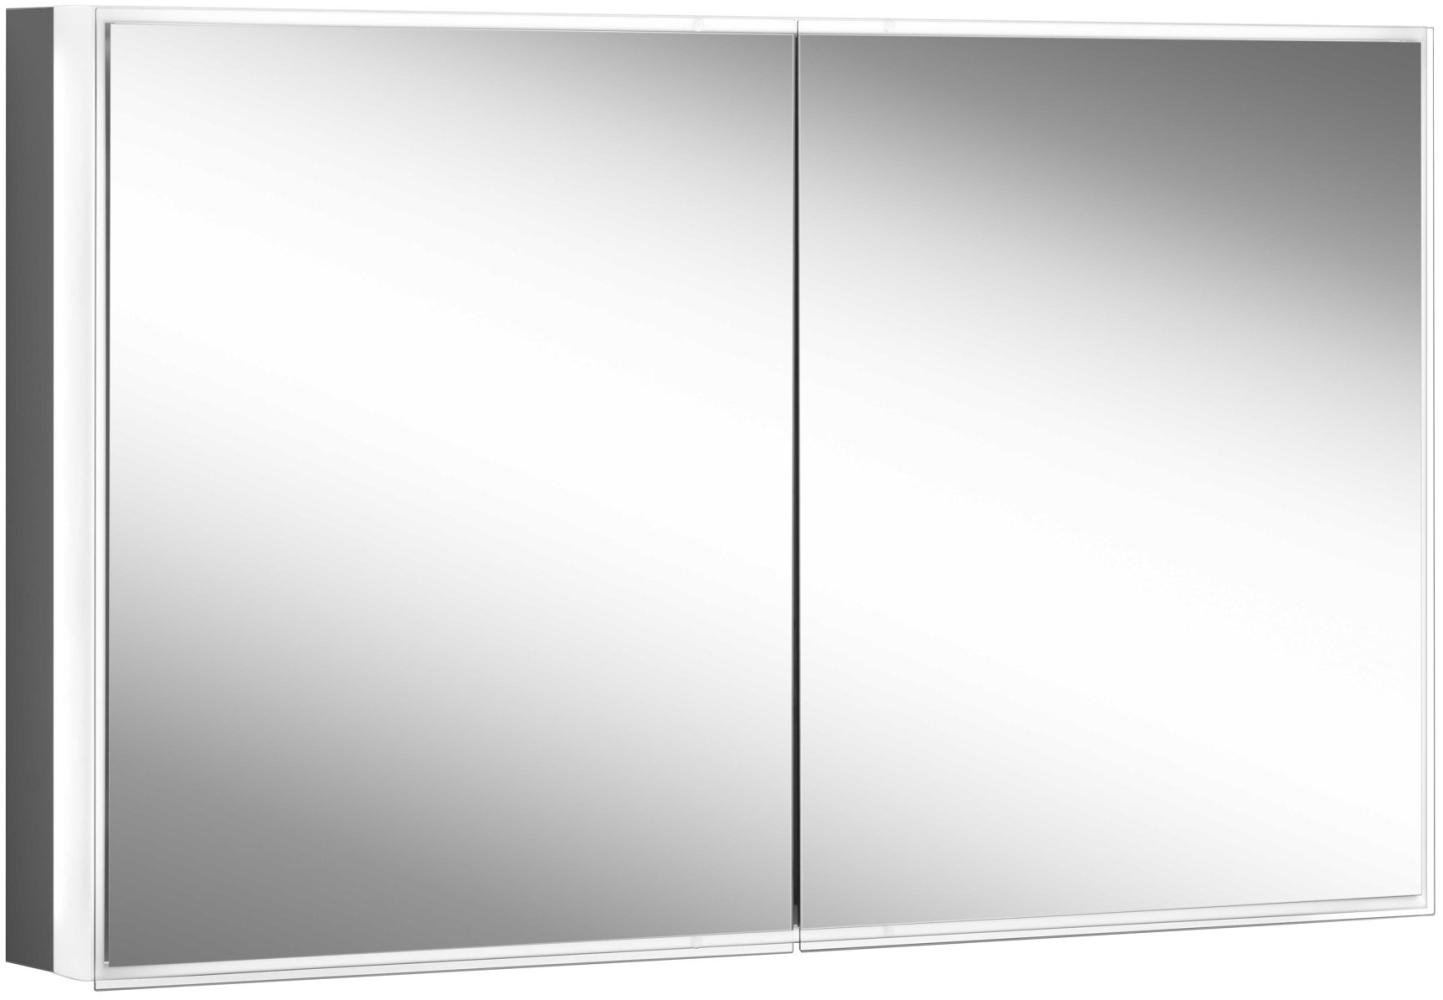 Schneider PREMIUM Line Superior LED Lichtspiegelschrank, 2 Doppelspiegeltüren, 1025x73,6x16,7cm, 181. 100, Ausführung: EU-Norm/Korpus schwarz matt - 181. 100. 02. 41 Bild 1